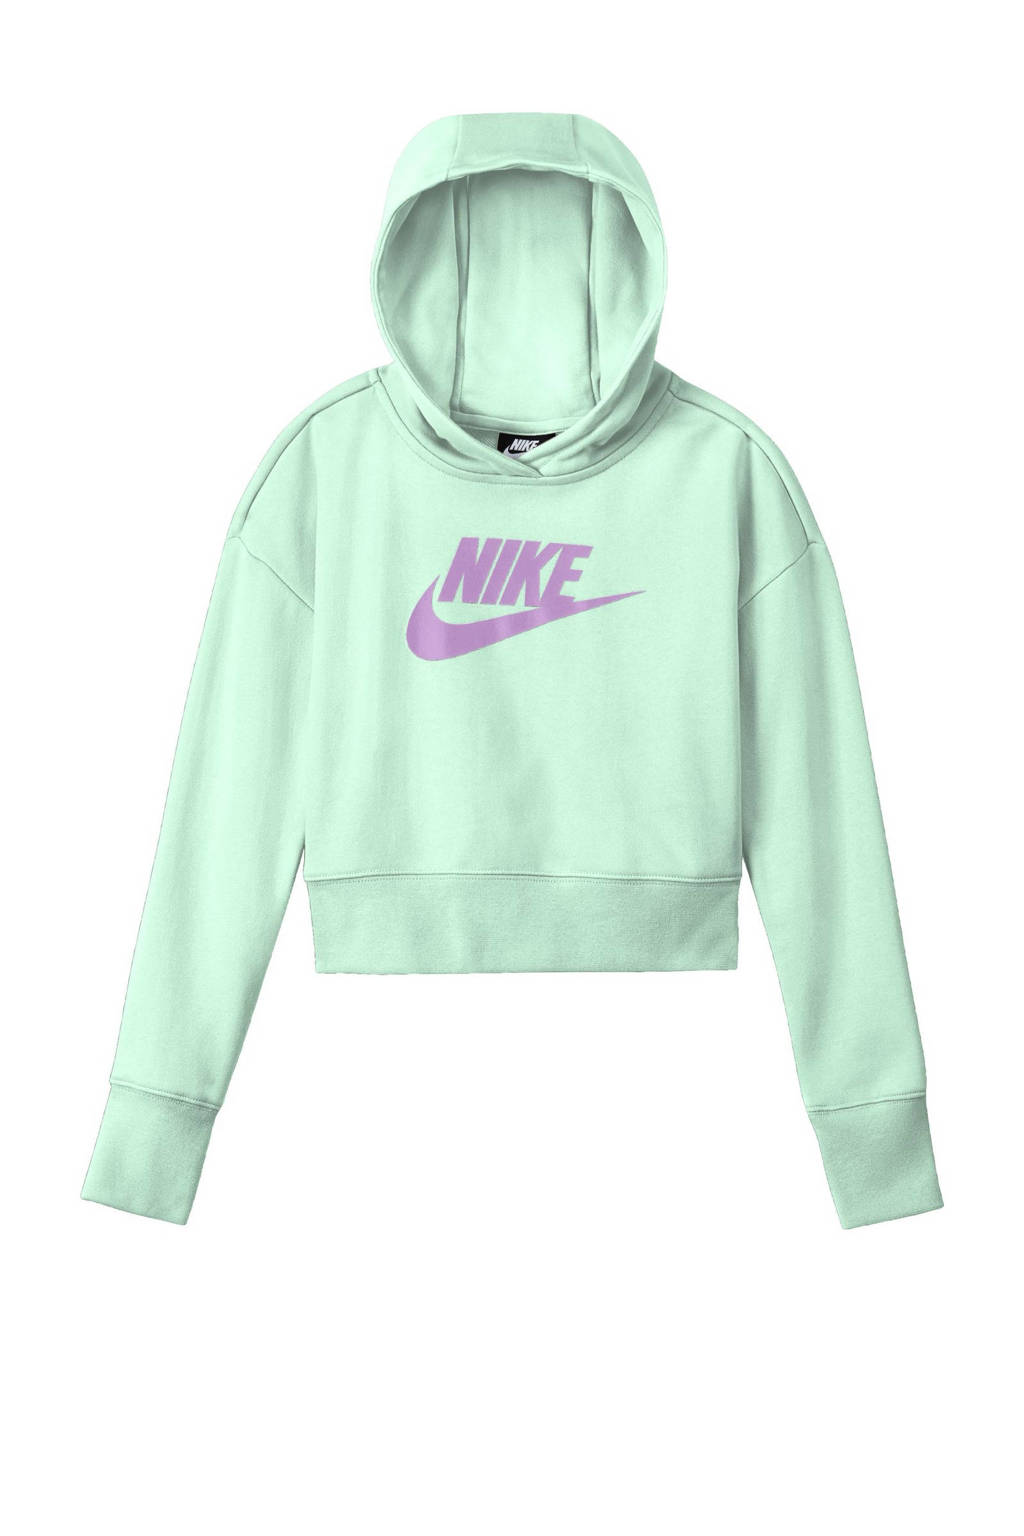 Nike cropped hoodie mintgroen/violet